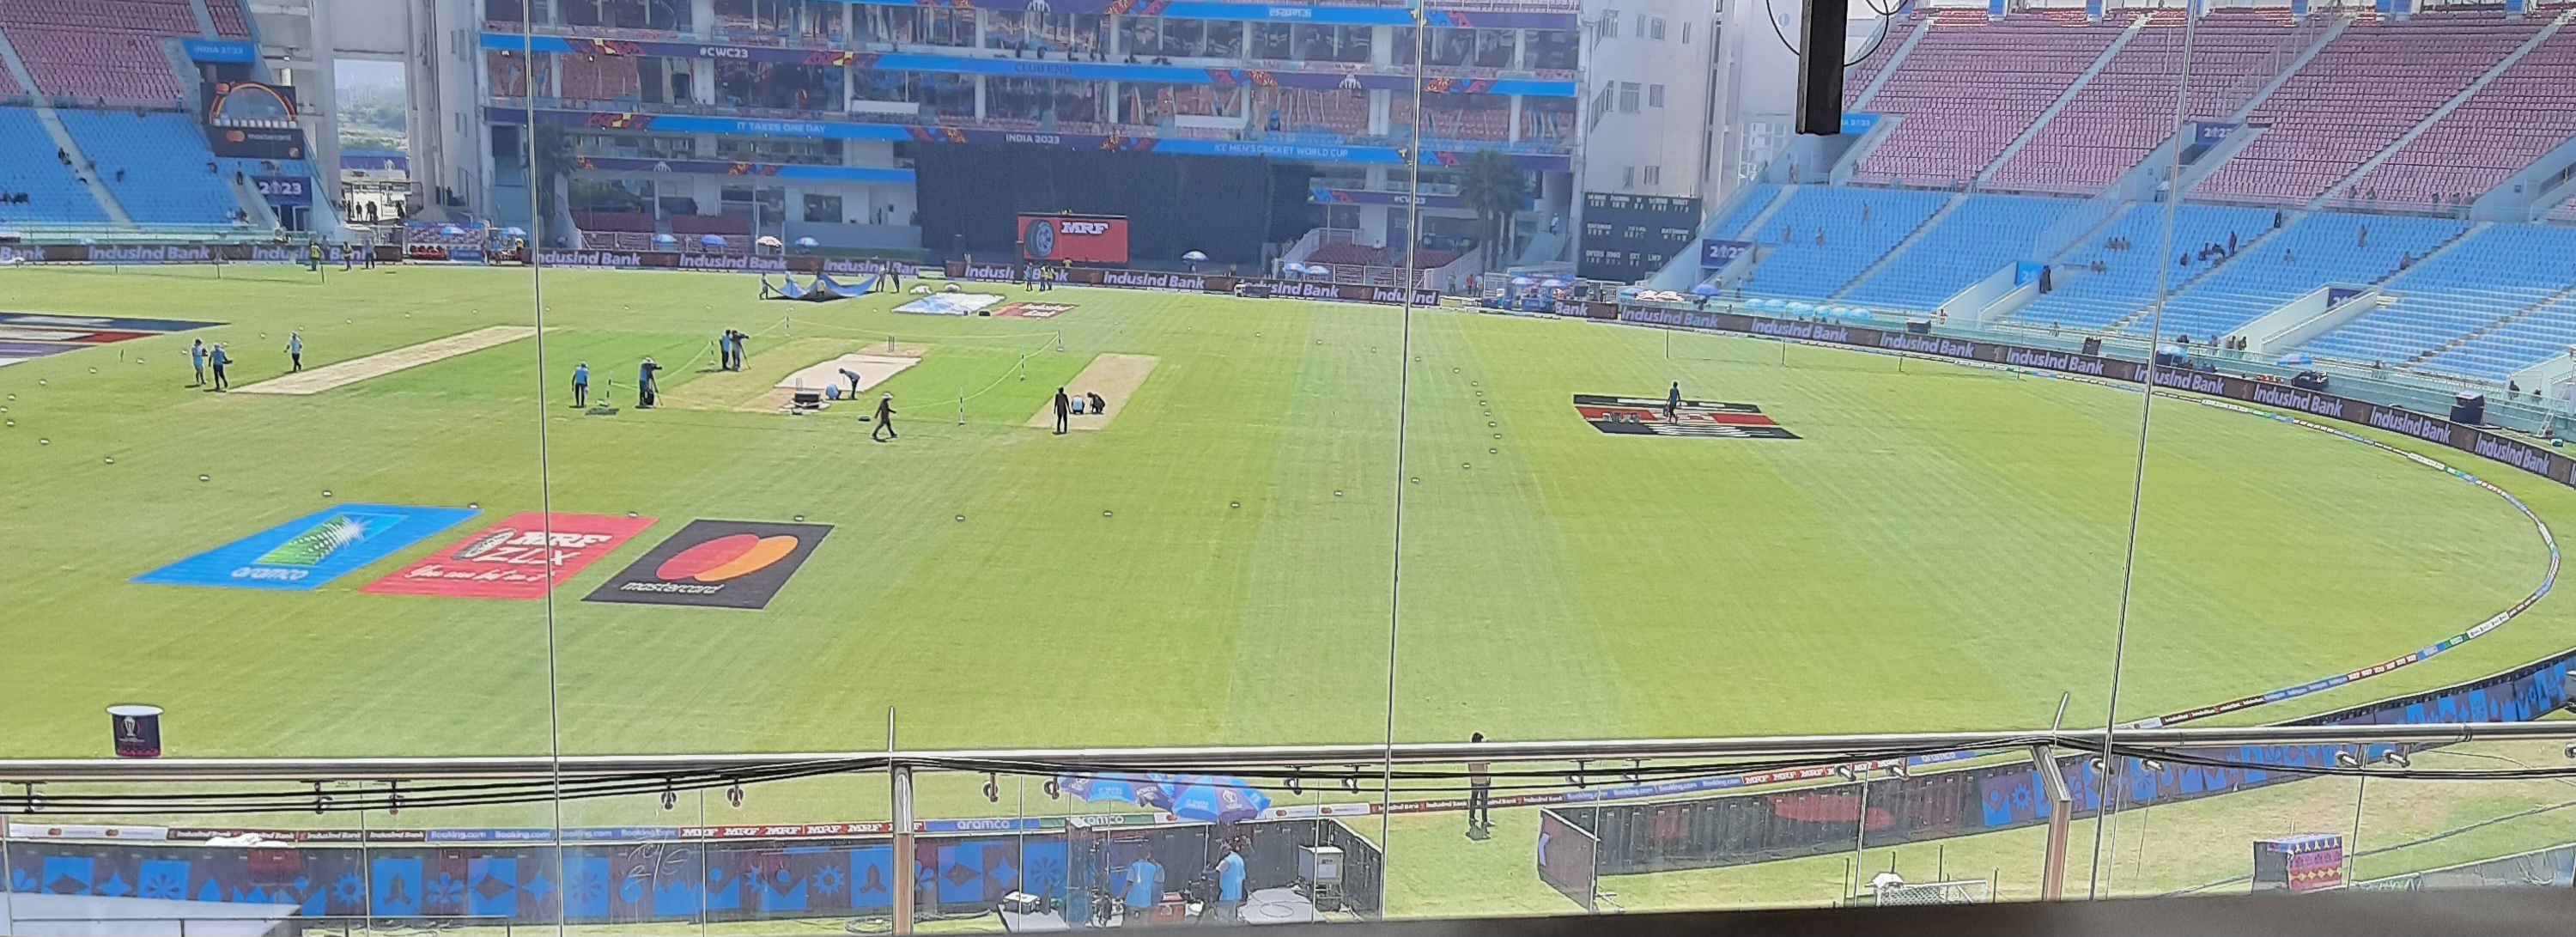 ऑस्ट्रेलिया और दक्षिण अफ्रीका क्रिकेटरों का जौहर देखने के लिए Ekana Stadium में उमड़े दर्शक